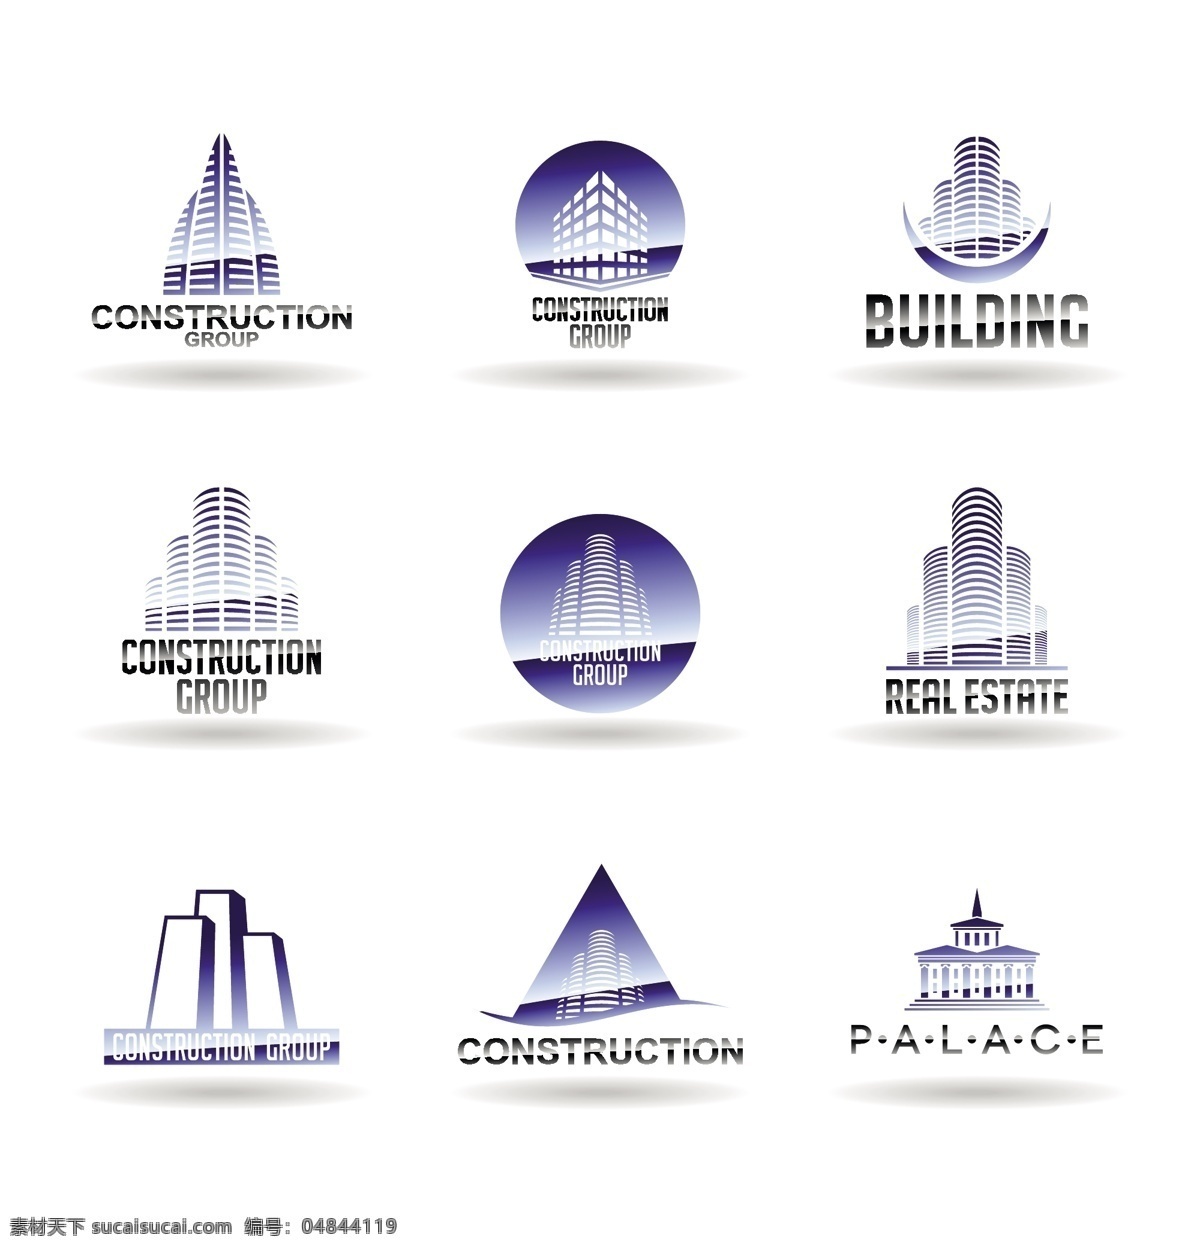 紫色 楼房 logo logo设计 商品标识 商标 公司标志 创意logo 标志图标 矢量素材 白色